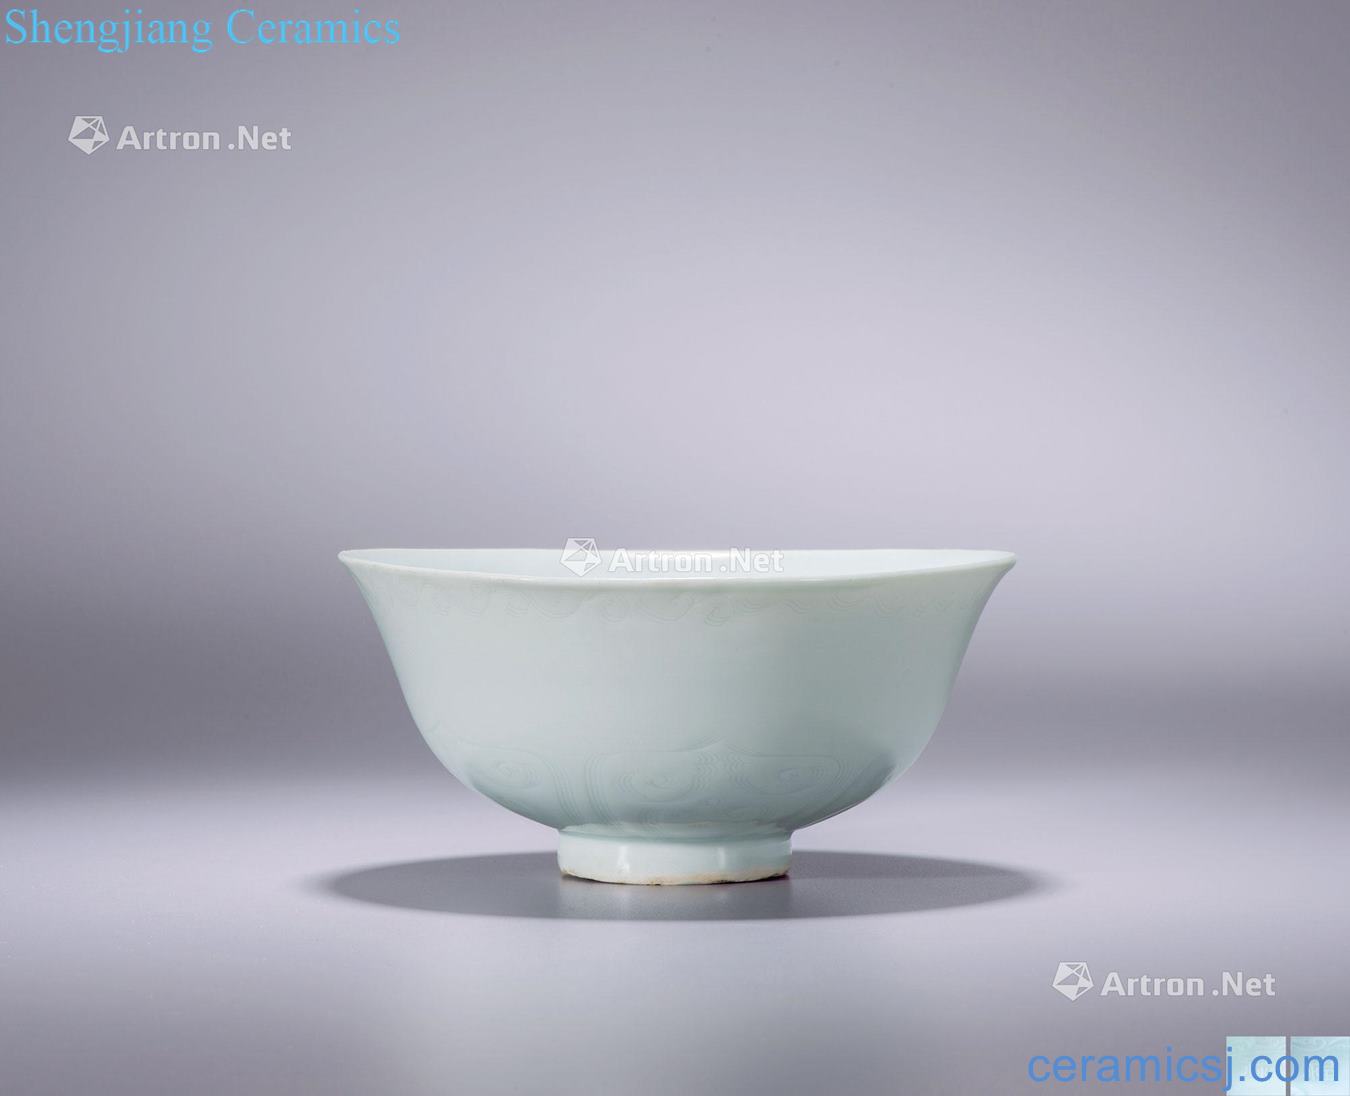 yuan Pivot mansion glaze stamps James t. c. na was published "ferro" green-splashed bowls